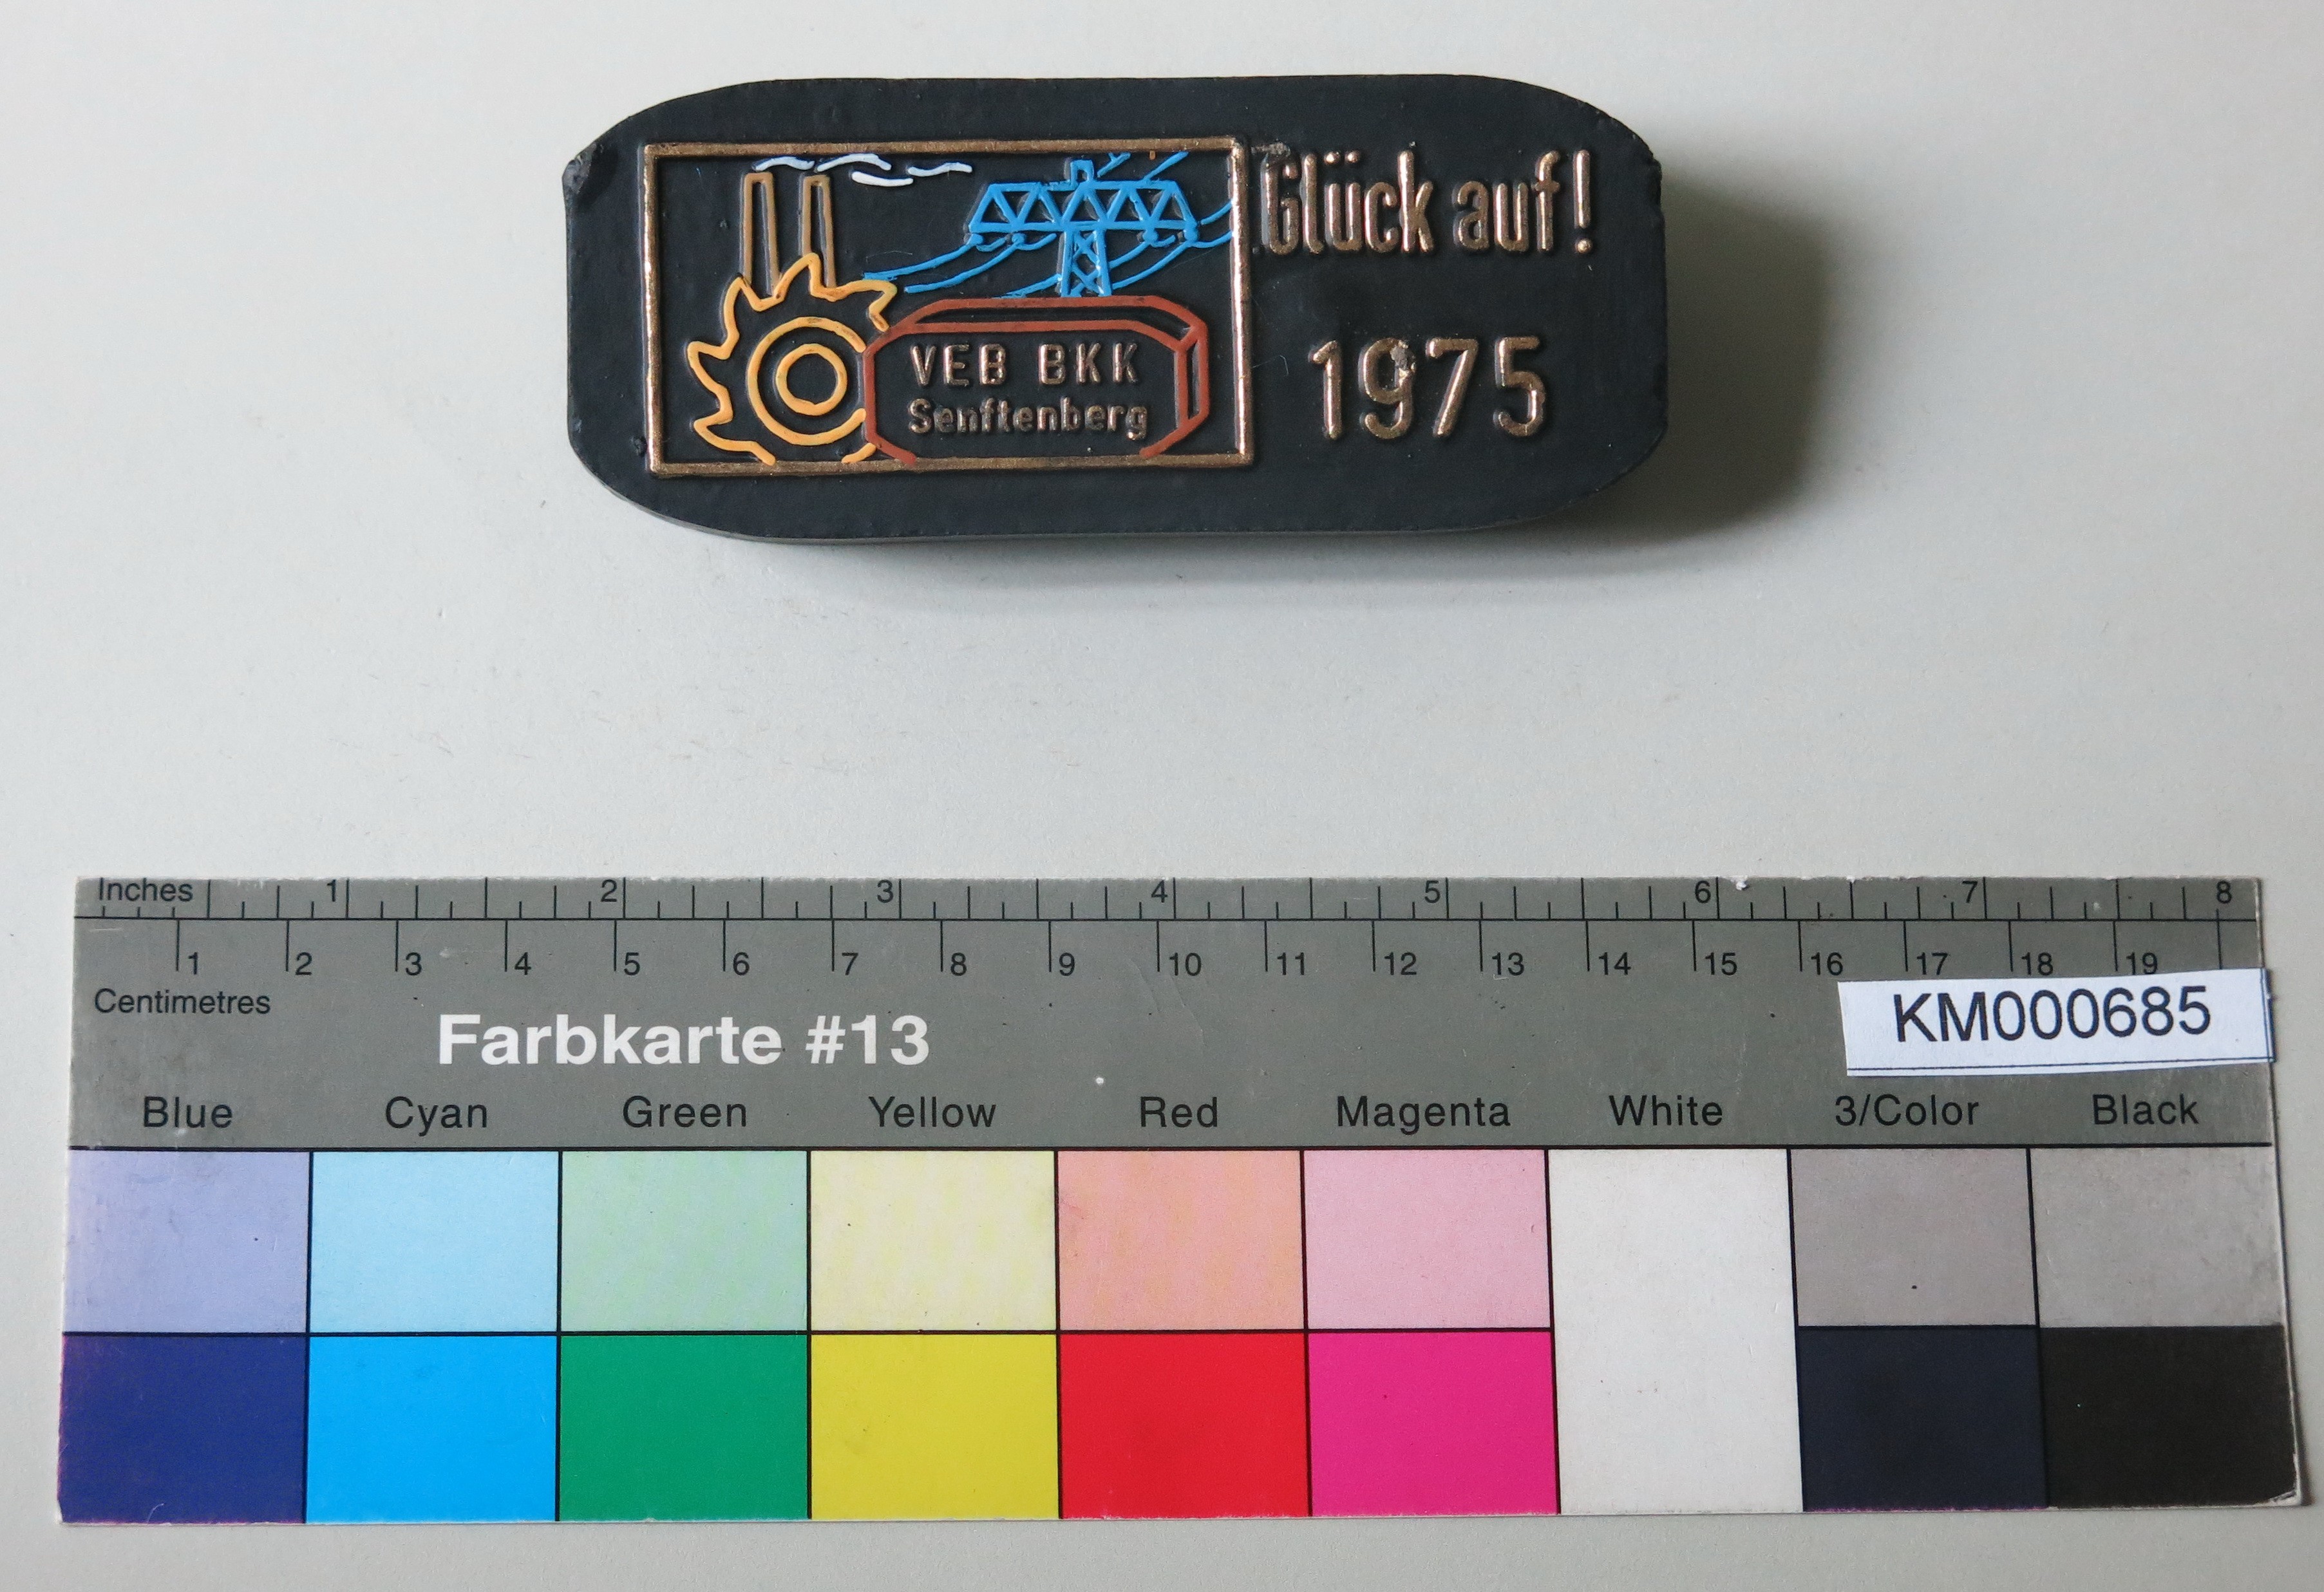 Zierbrikett " Glück auf ! 1975 VEB BKK Senftenberg" (Energiefabrik Knappenrode CC BY-SA)